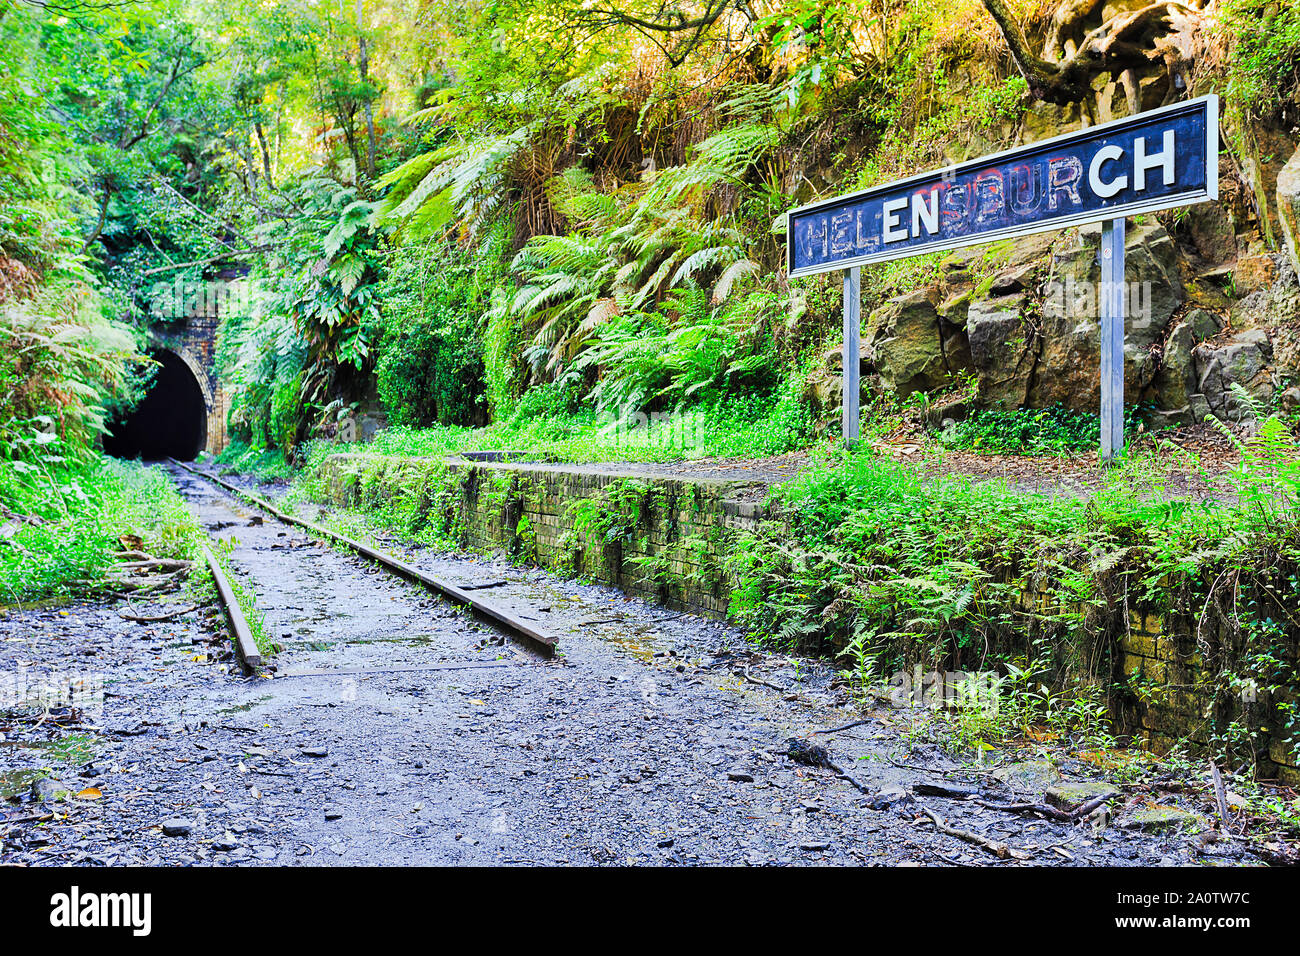 Alten, verlassenen Rail Way Rail Road Tunnel in regionalen australische Stadt Helensburgh abgedeckt in üppiger grüner Vegetation und alten Schienen. Stockfoto